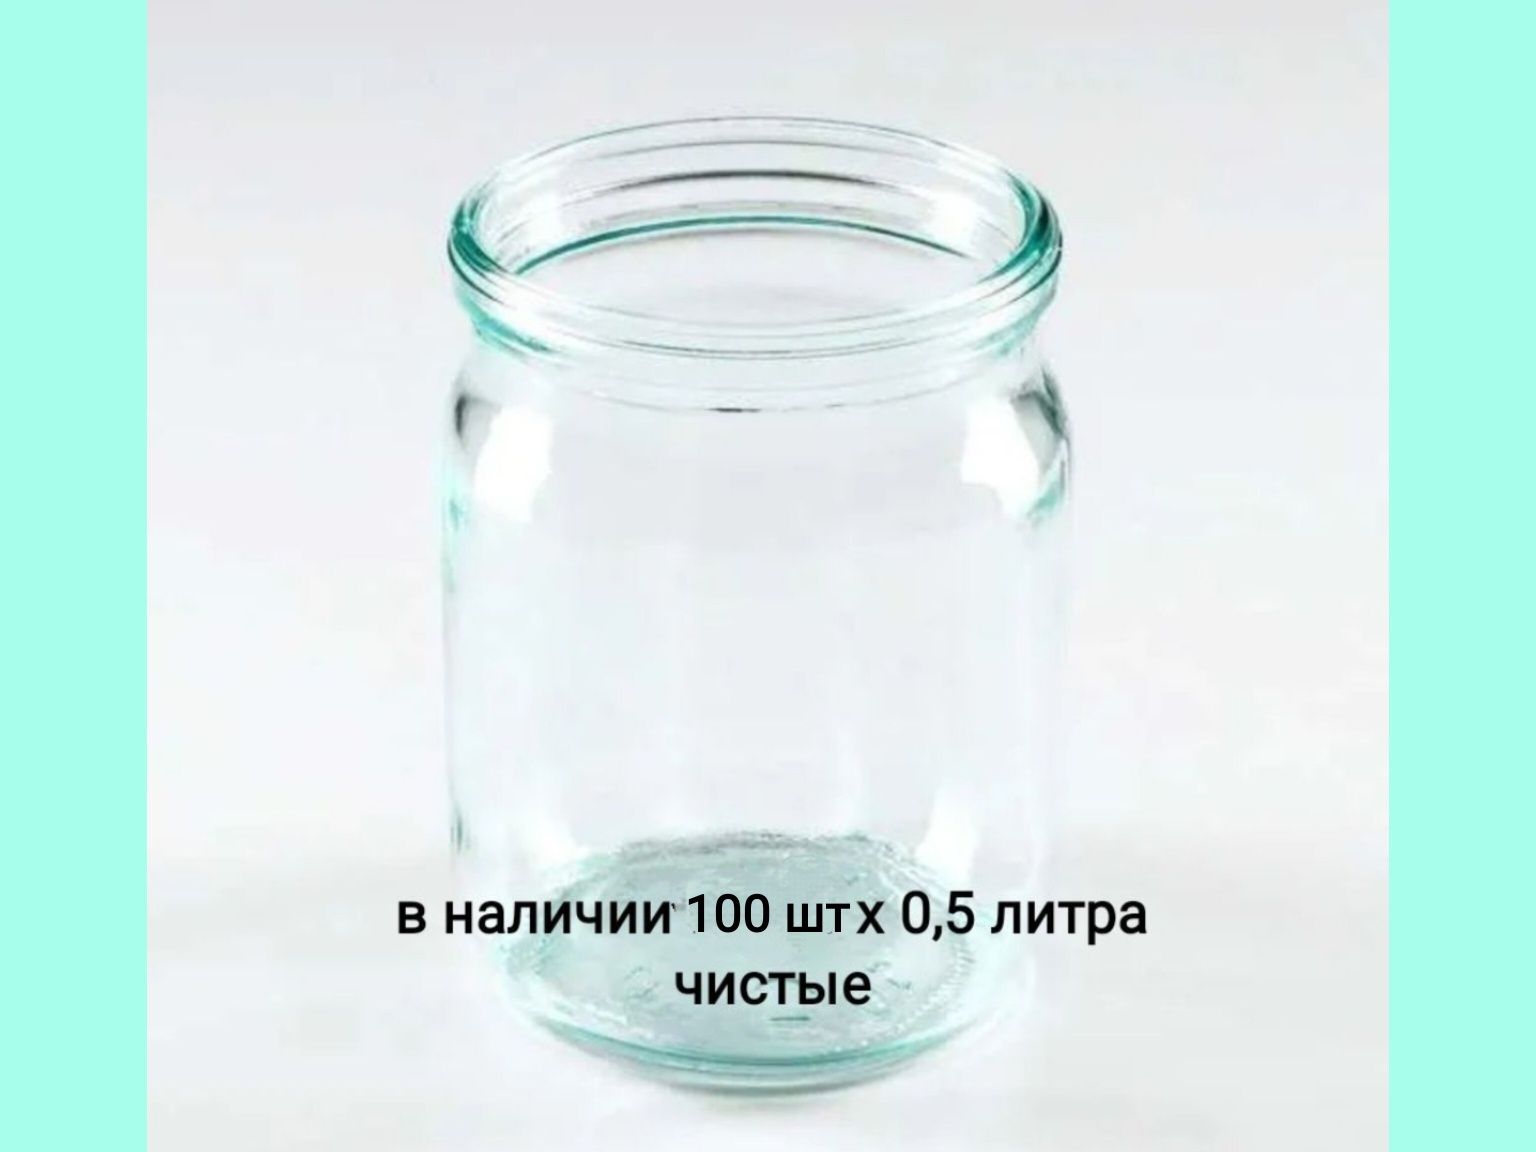 Банки стеклянные 0,5 литра (твист и обычная)